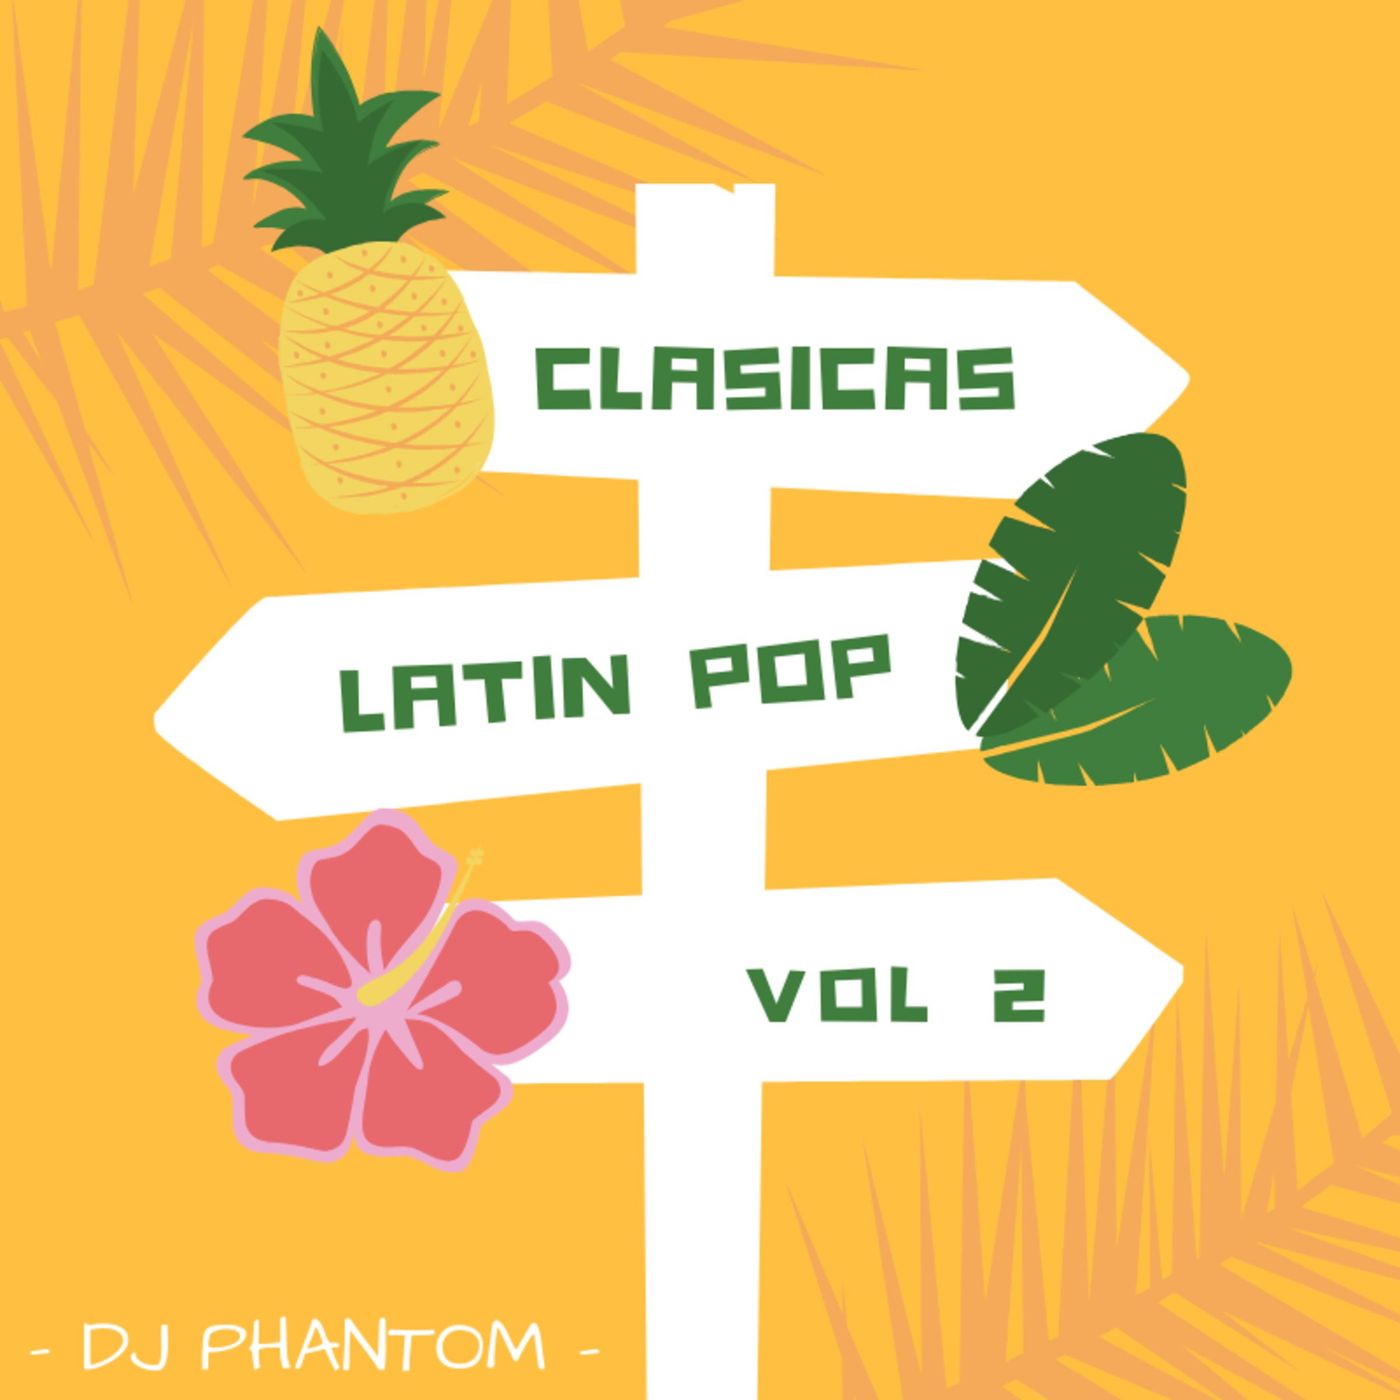 Clasicas Latin Pop vol 2